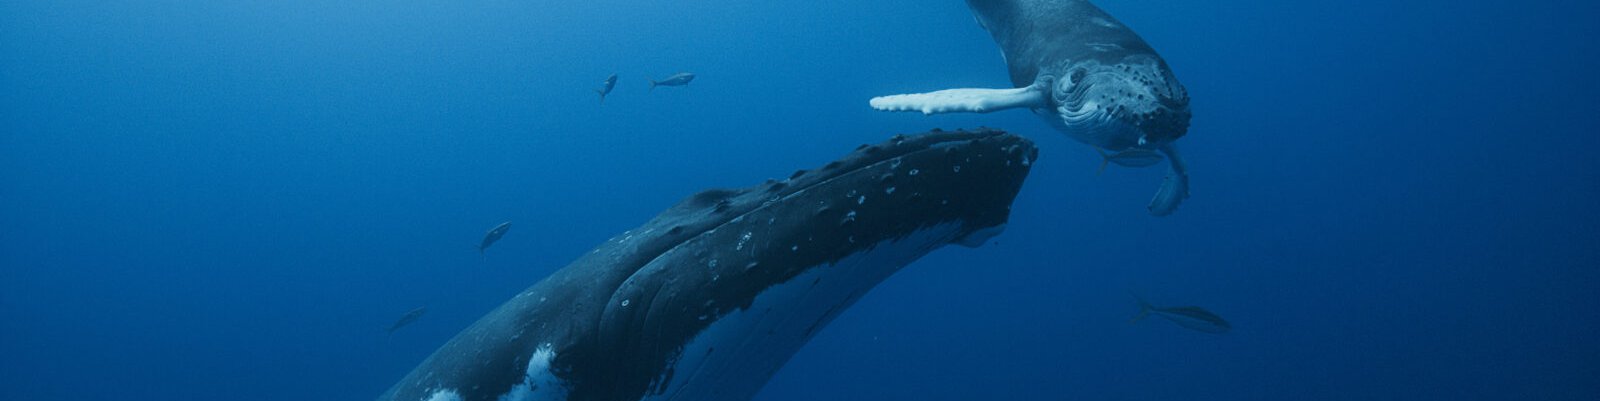 whale5.jpg